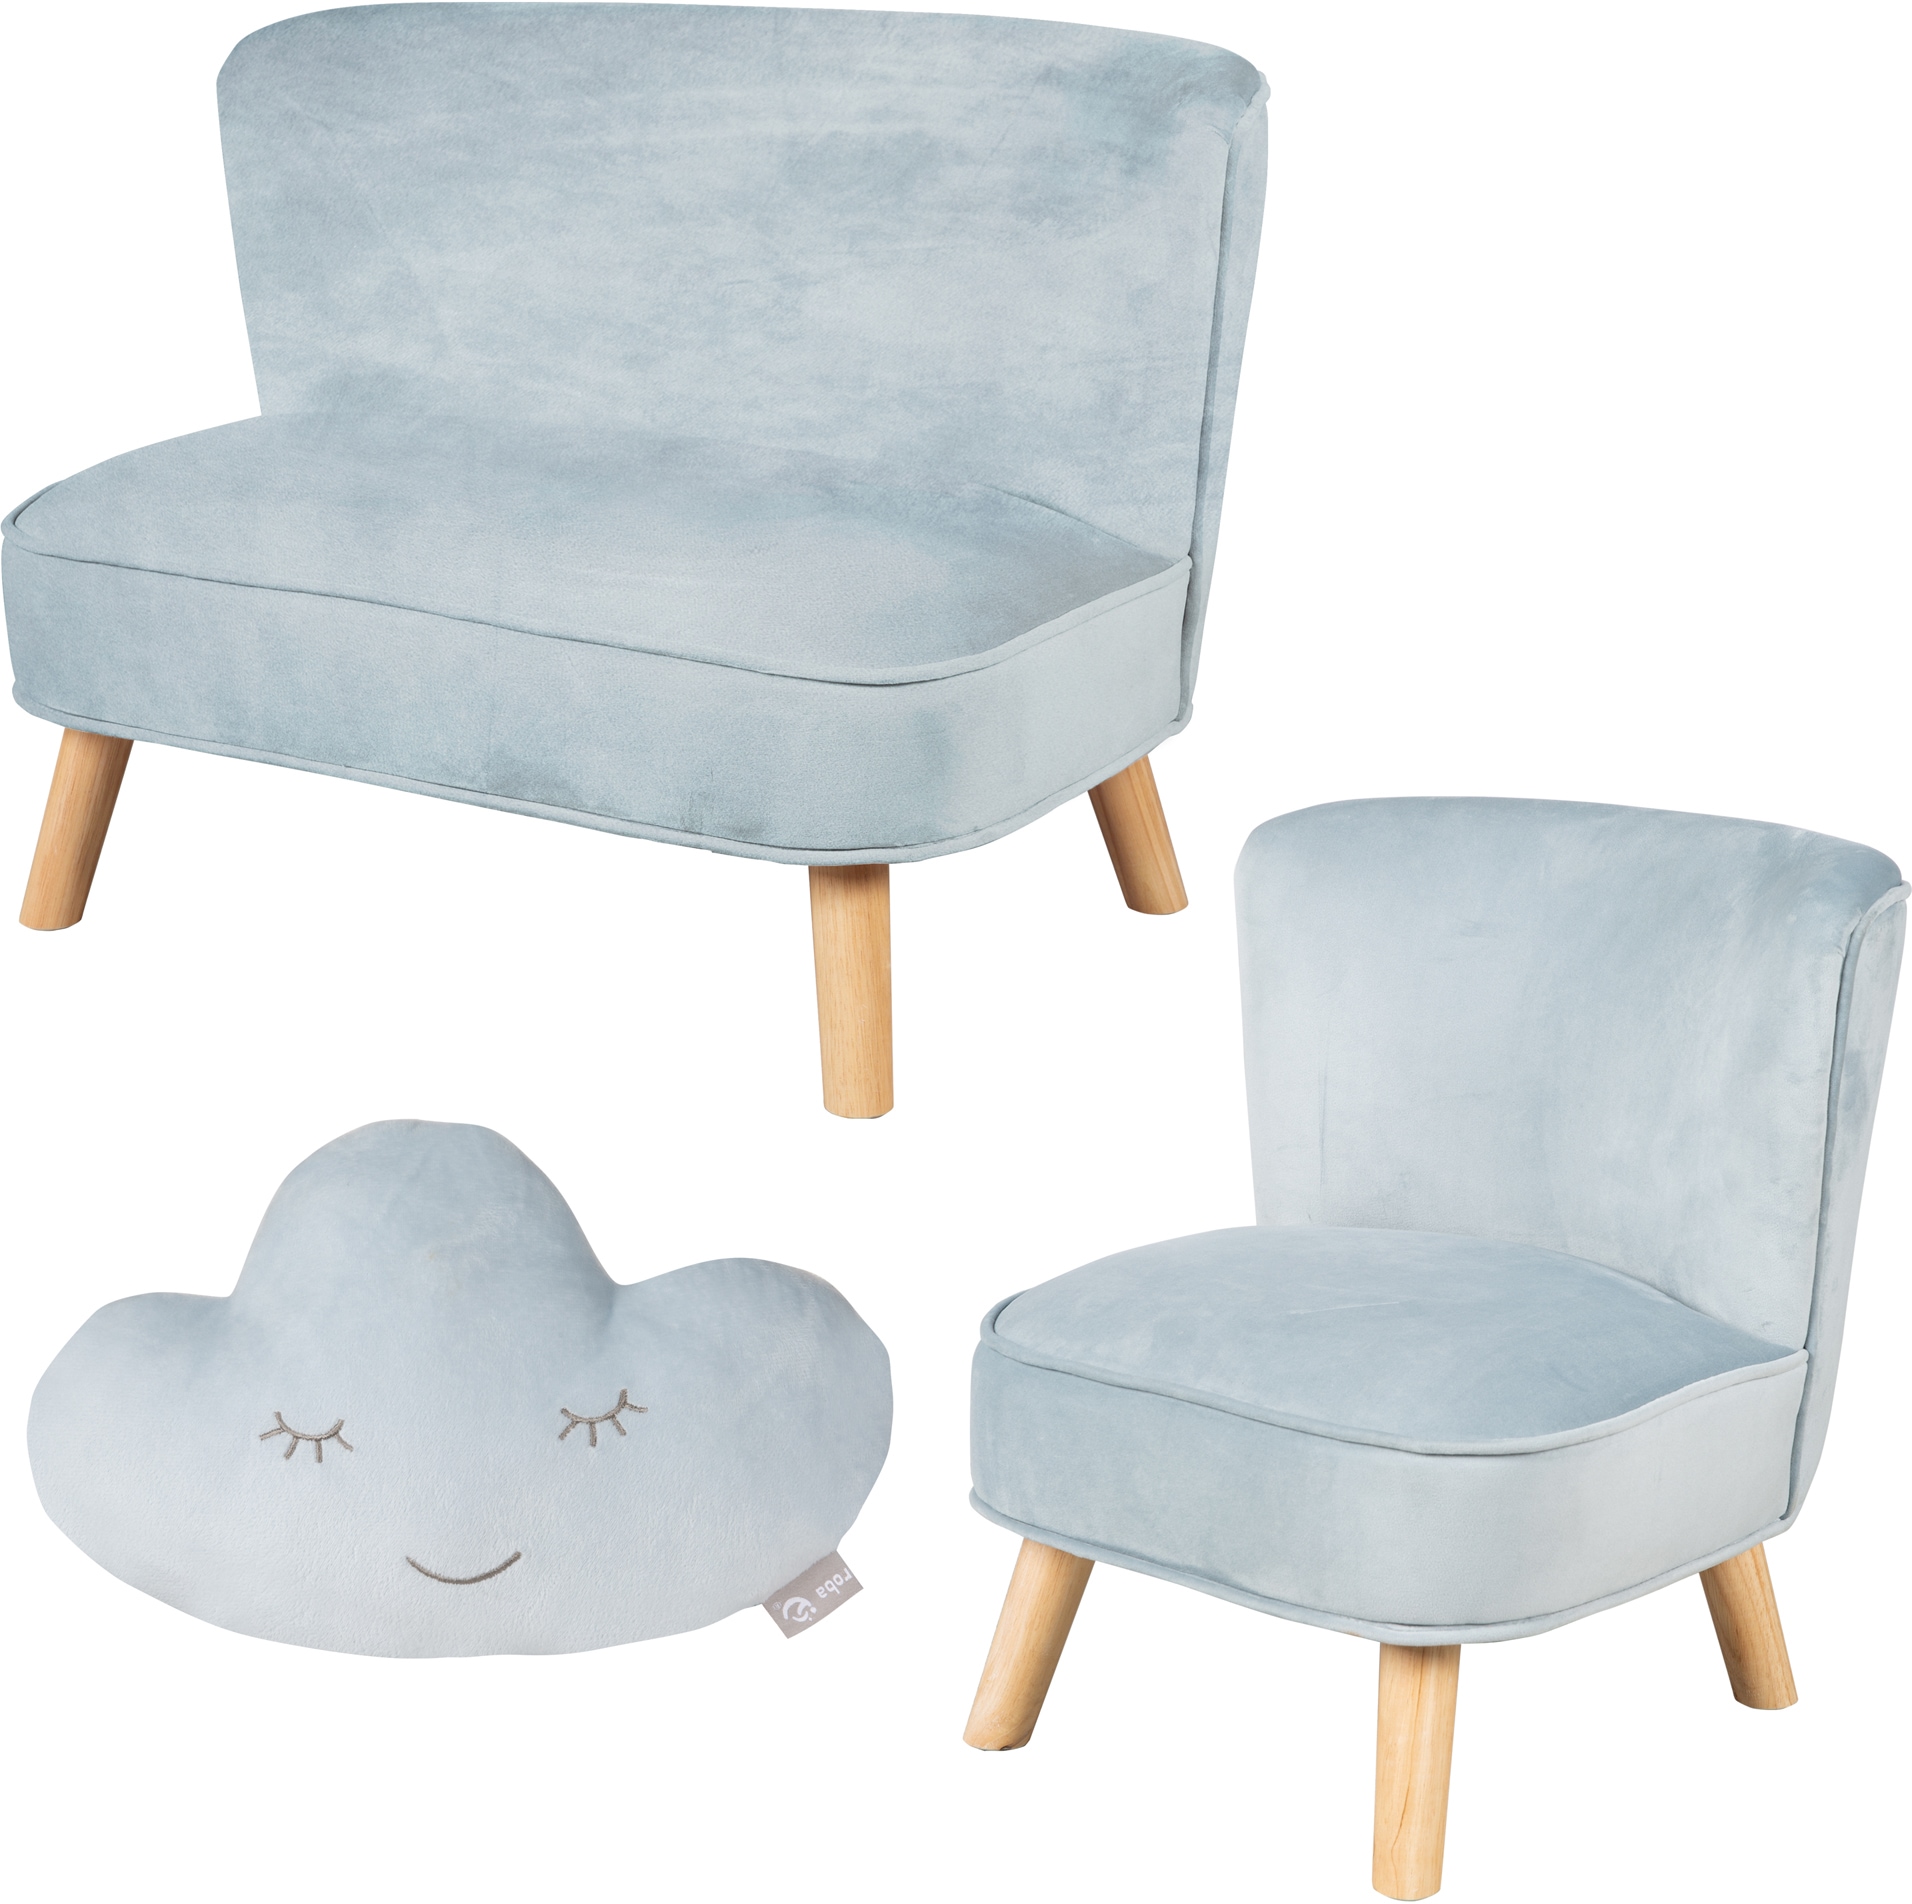 roba® Kindersitzgruppe »Lil Sofa«, (Set, 3 tlg.), bestehend aus Kindersofa, Kindersessel und Dekokissen in Wolkenform